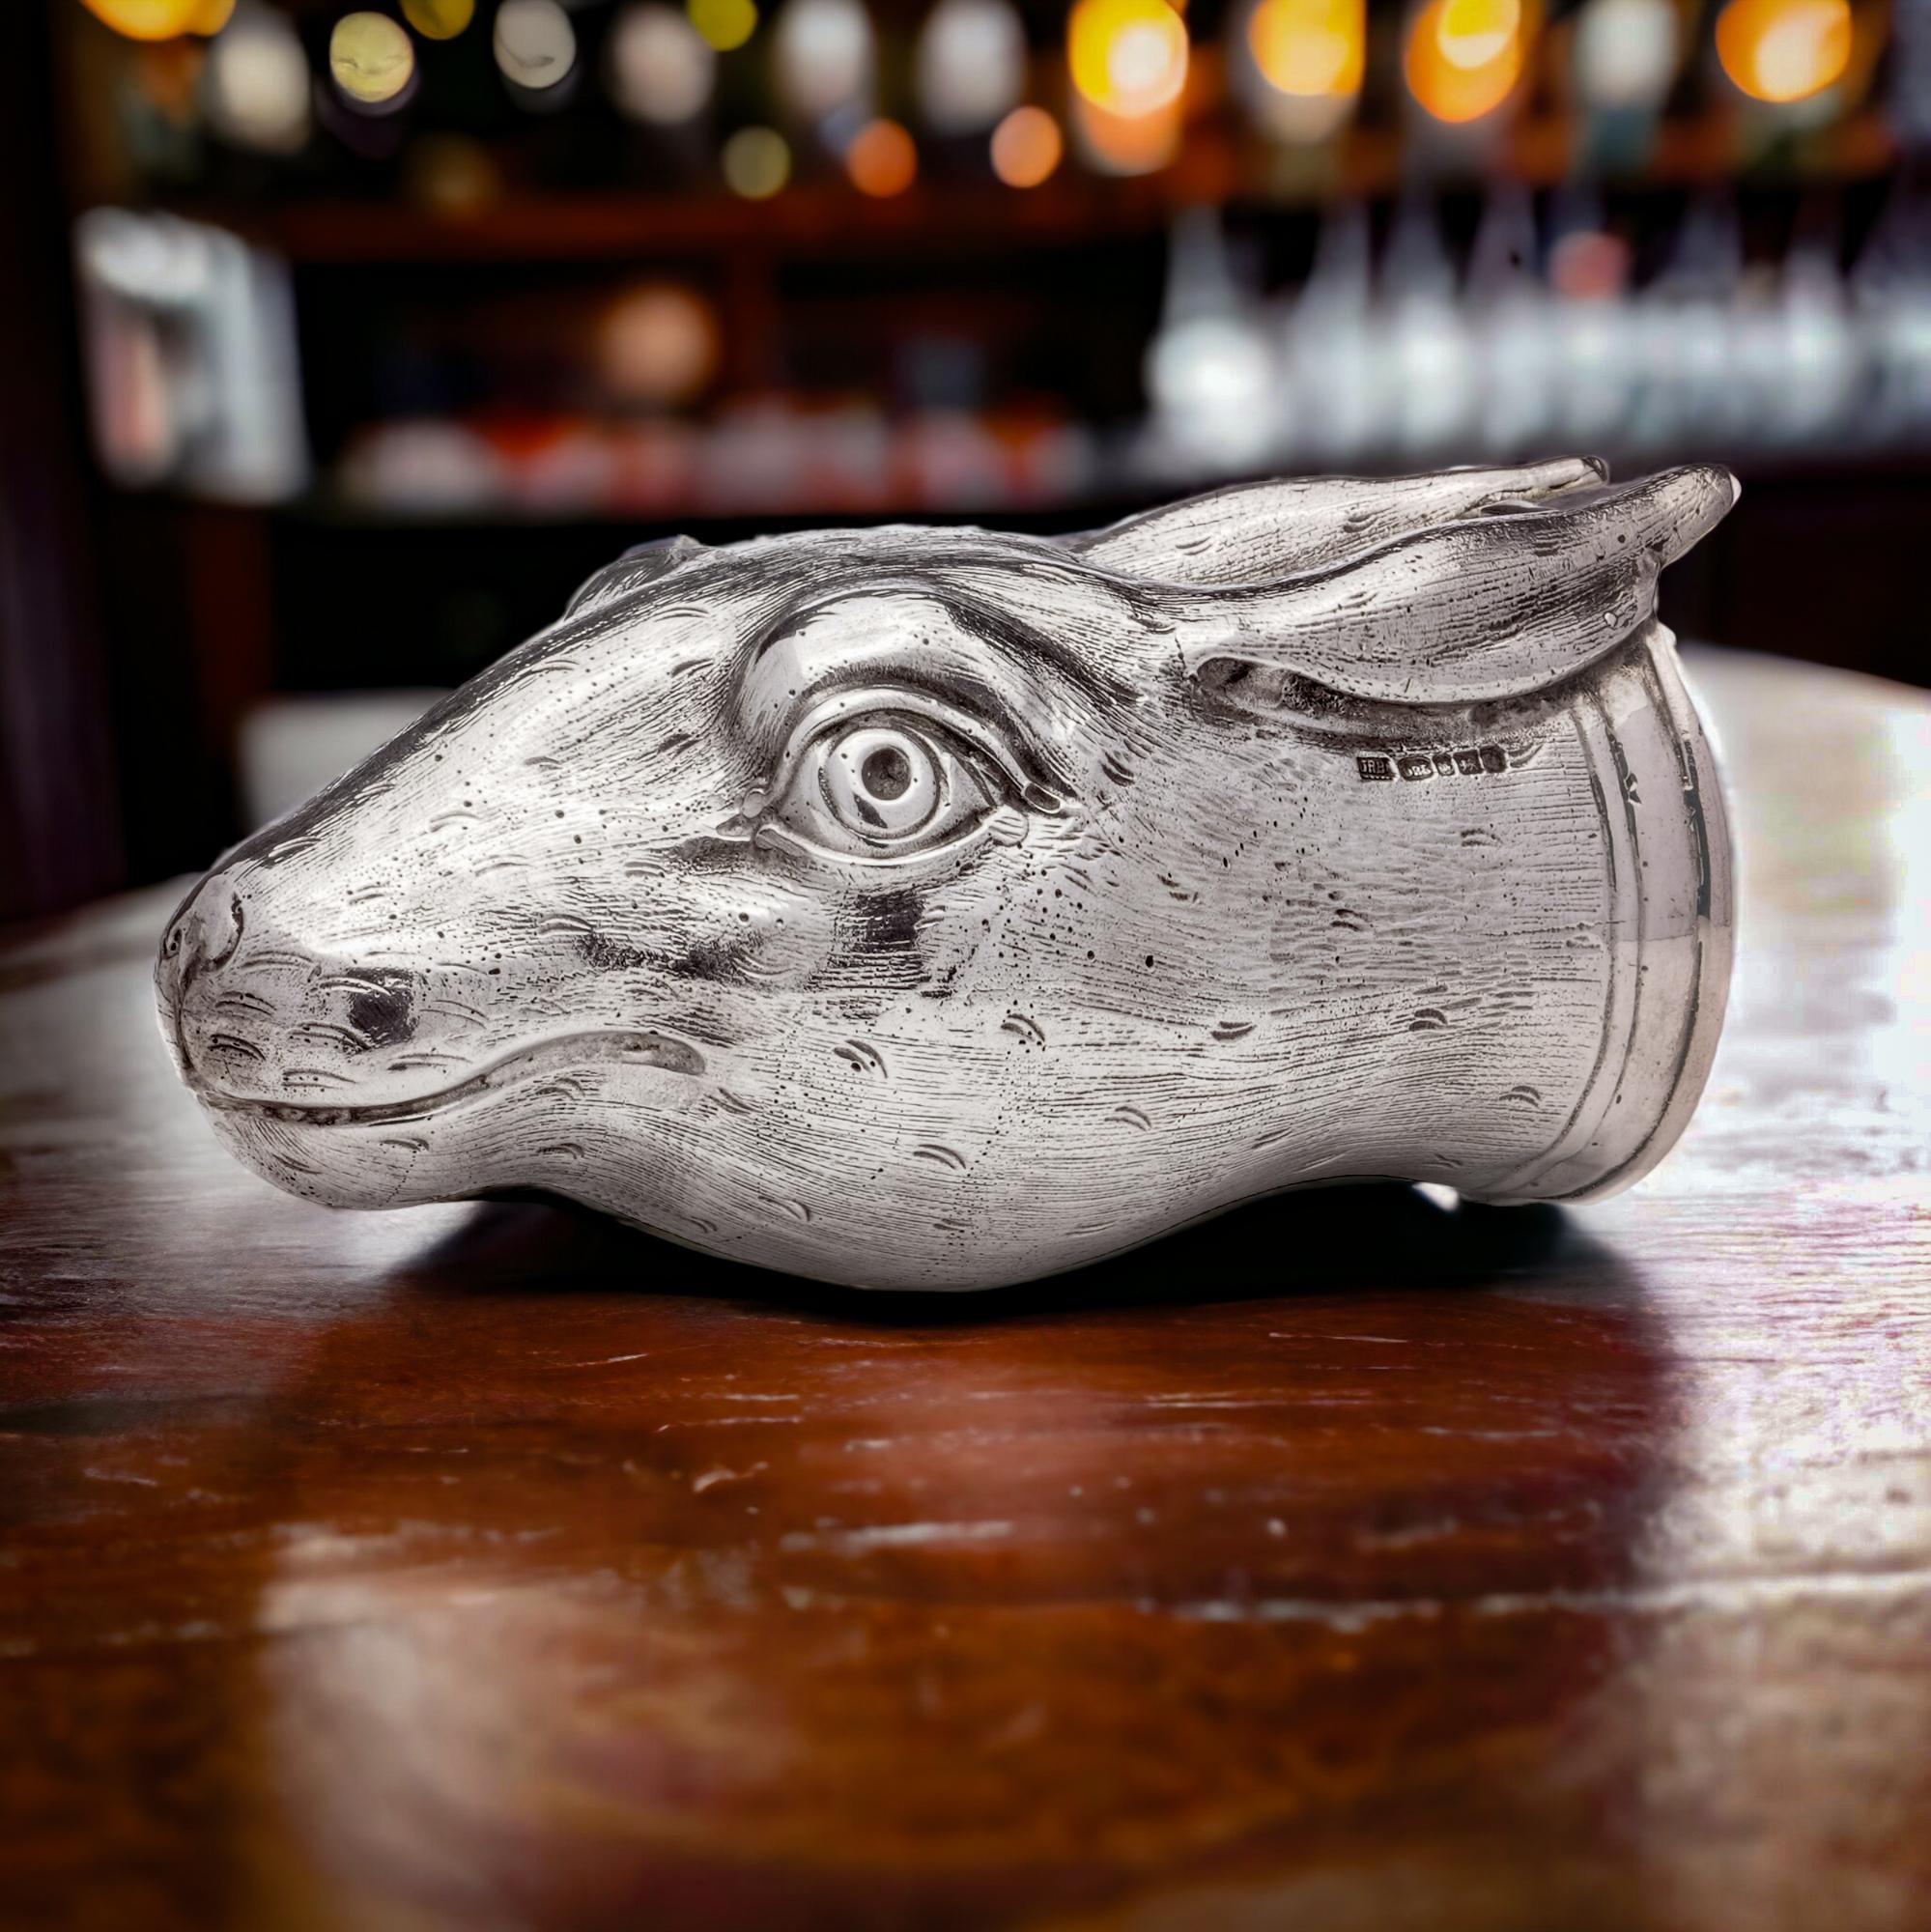 Außergewöhnliche moderne Sterling Silber Steigbügel Cup in Form eines Kaninchens.
Schöpfer: John Reginald Burrows.
Hergestellt im Vereinigten Königreich, Birmingham 2008.
Vollständig gepunzt.

Dieses vom renommierten Silberschmied John Reginald